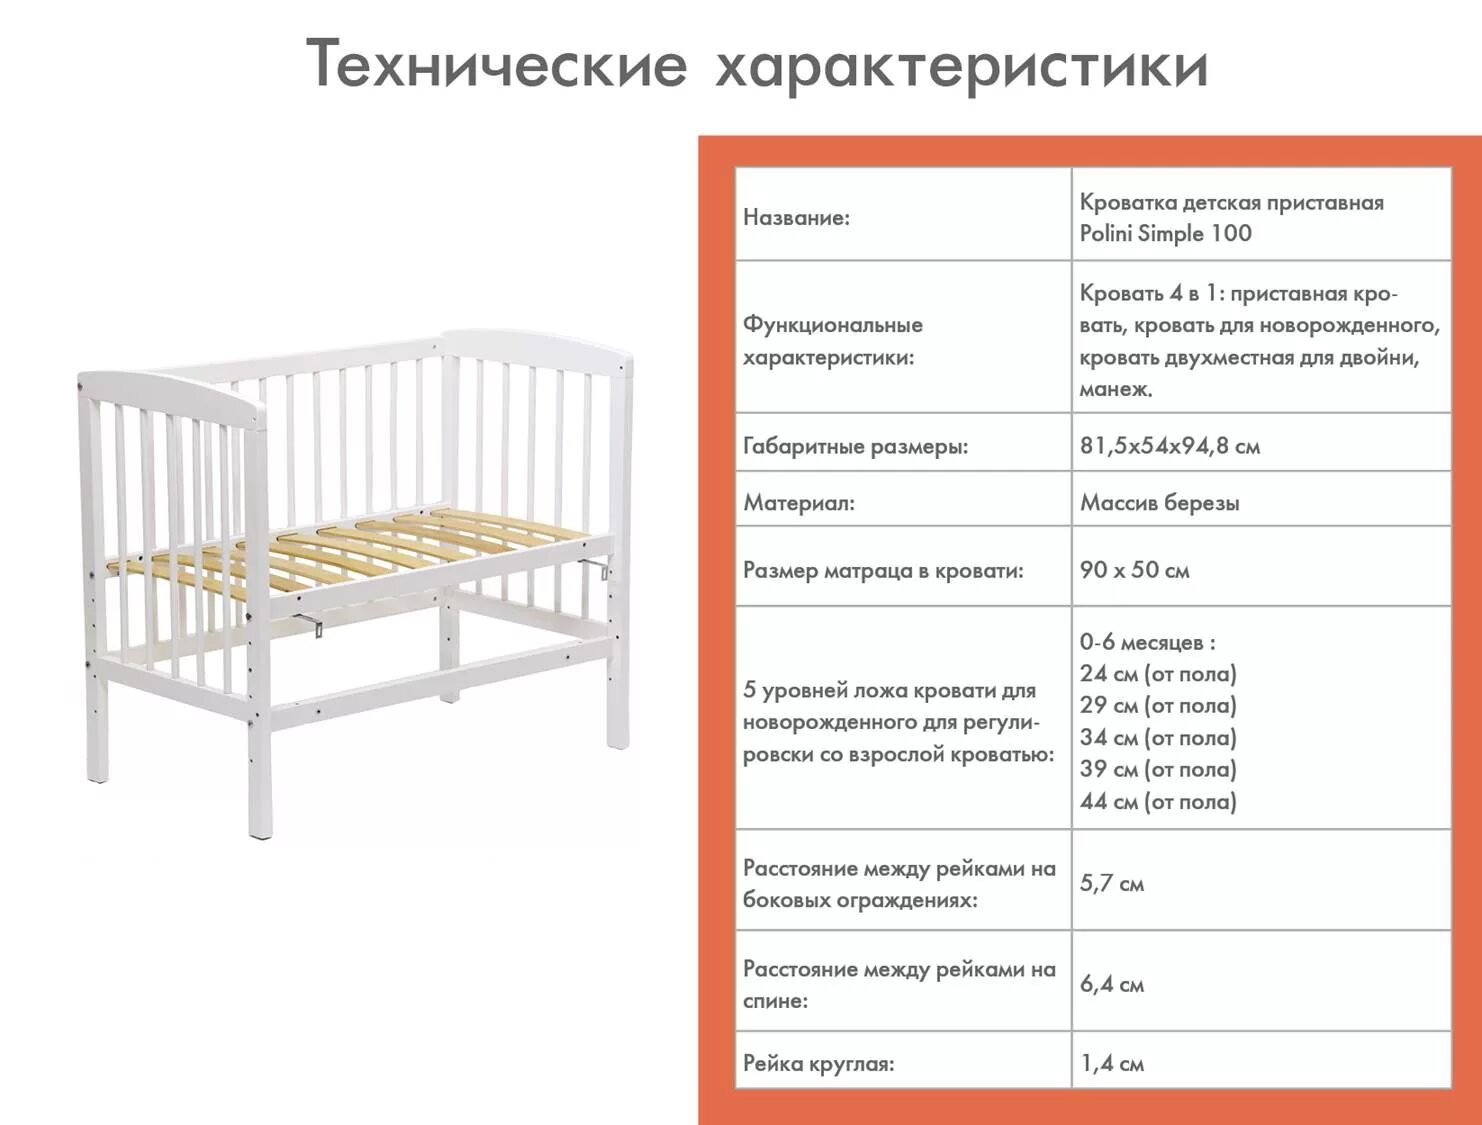 Размеры детской кровати для новорожденного. Габариты детской кроватки для новорожденных. Детская кроватка Размеры стандарт. Стандартная длина детской кроватки для новорожденных. Размер матраса в кроватку